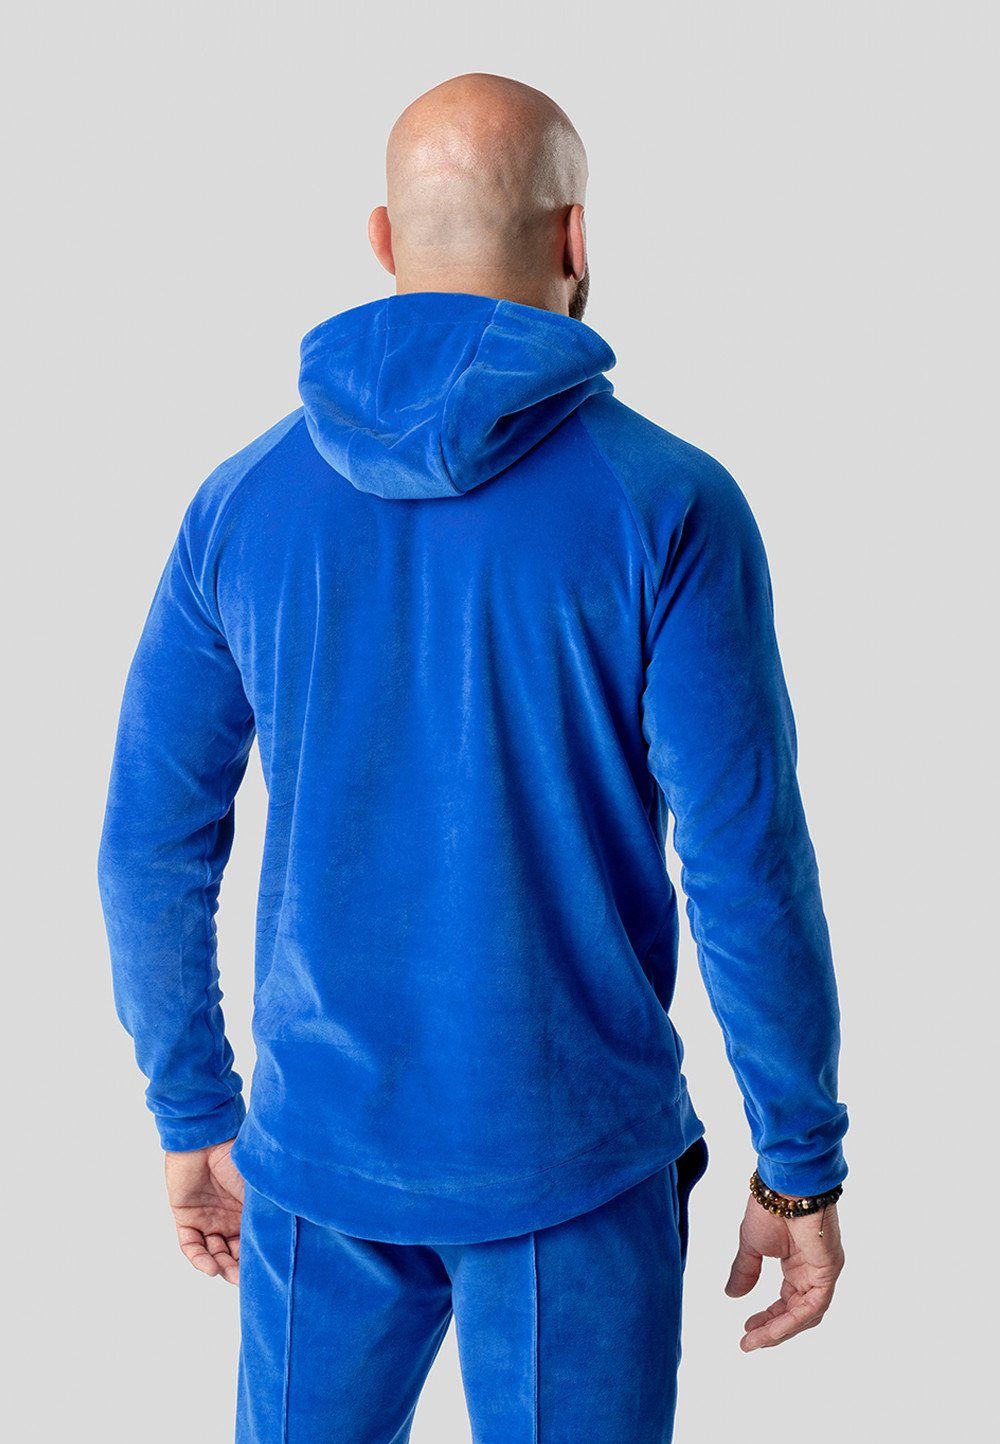 AMIGOS aus Hoodie in TRES sportlichem Hoodie Velour Blau Stil, Homewear